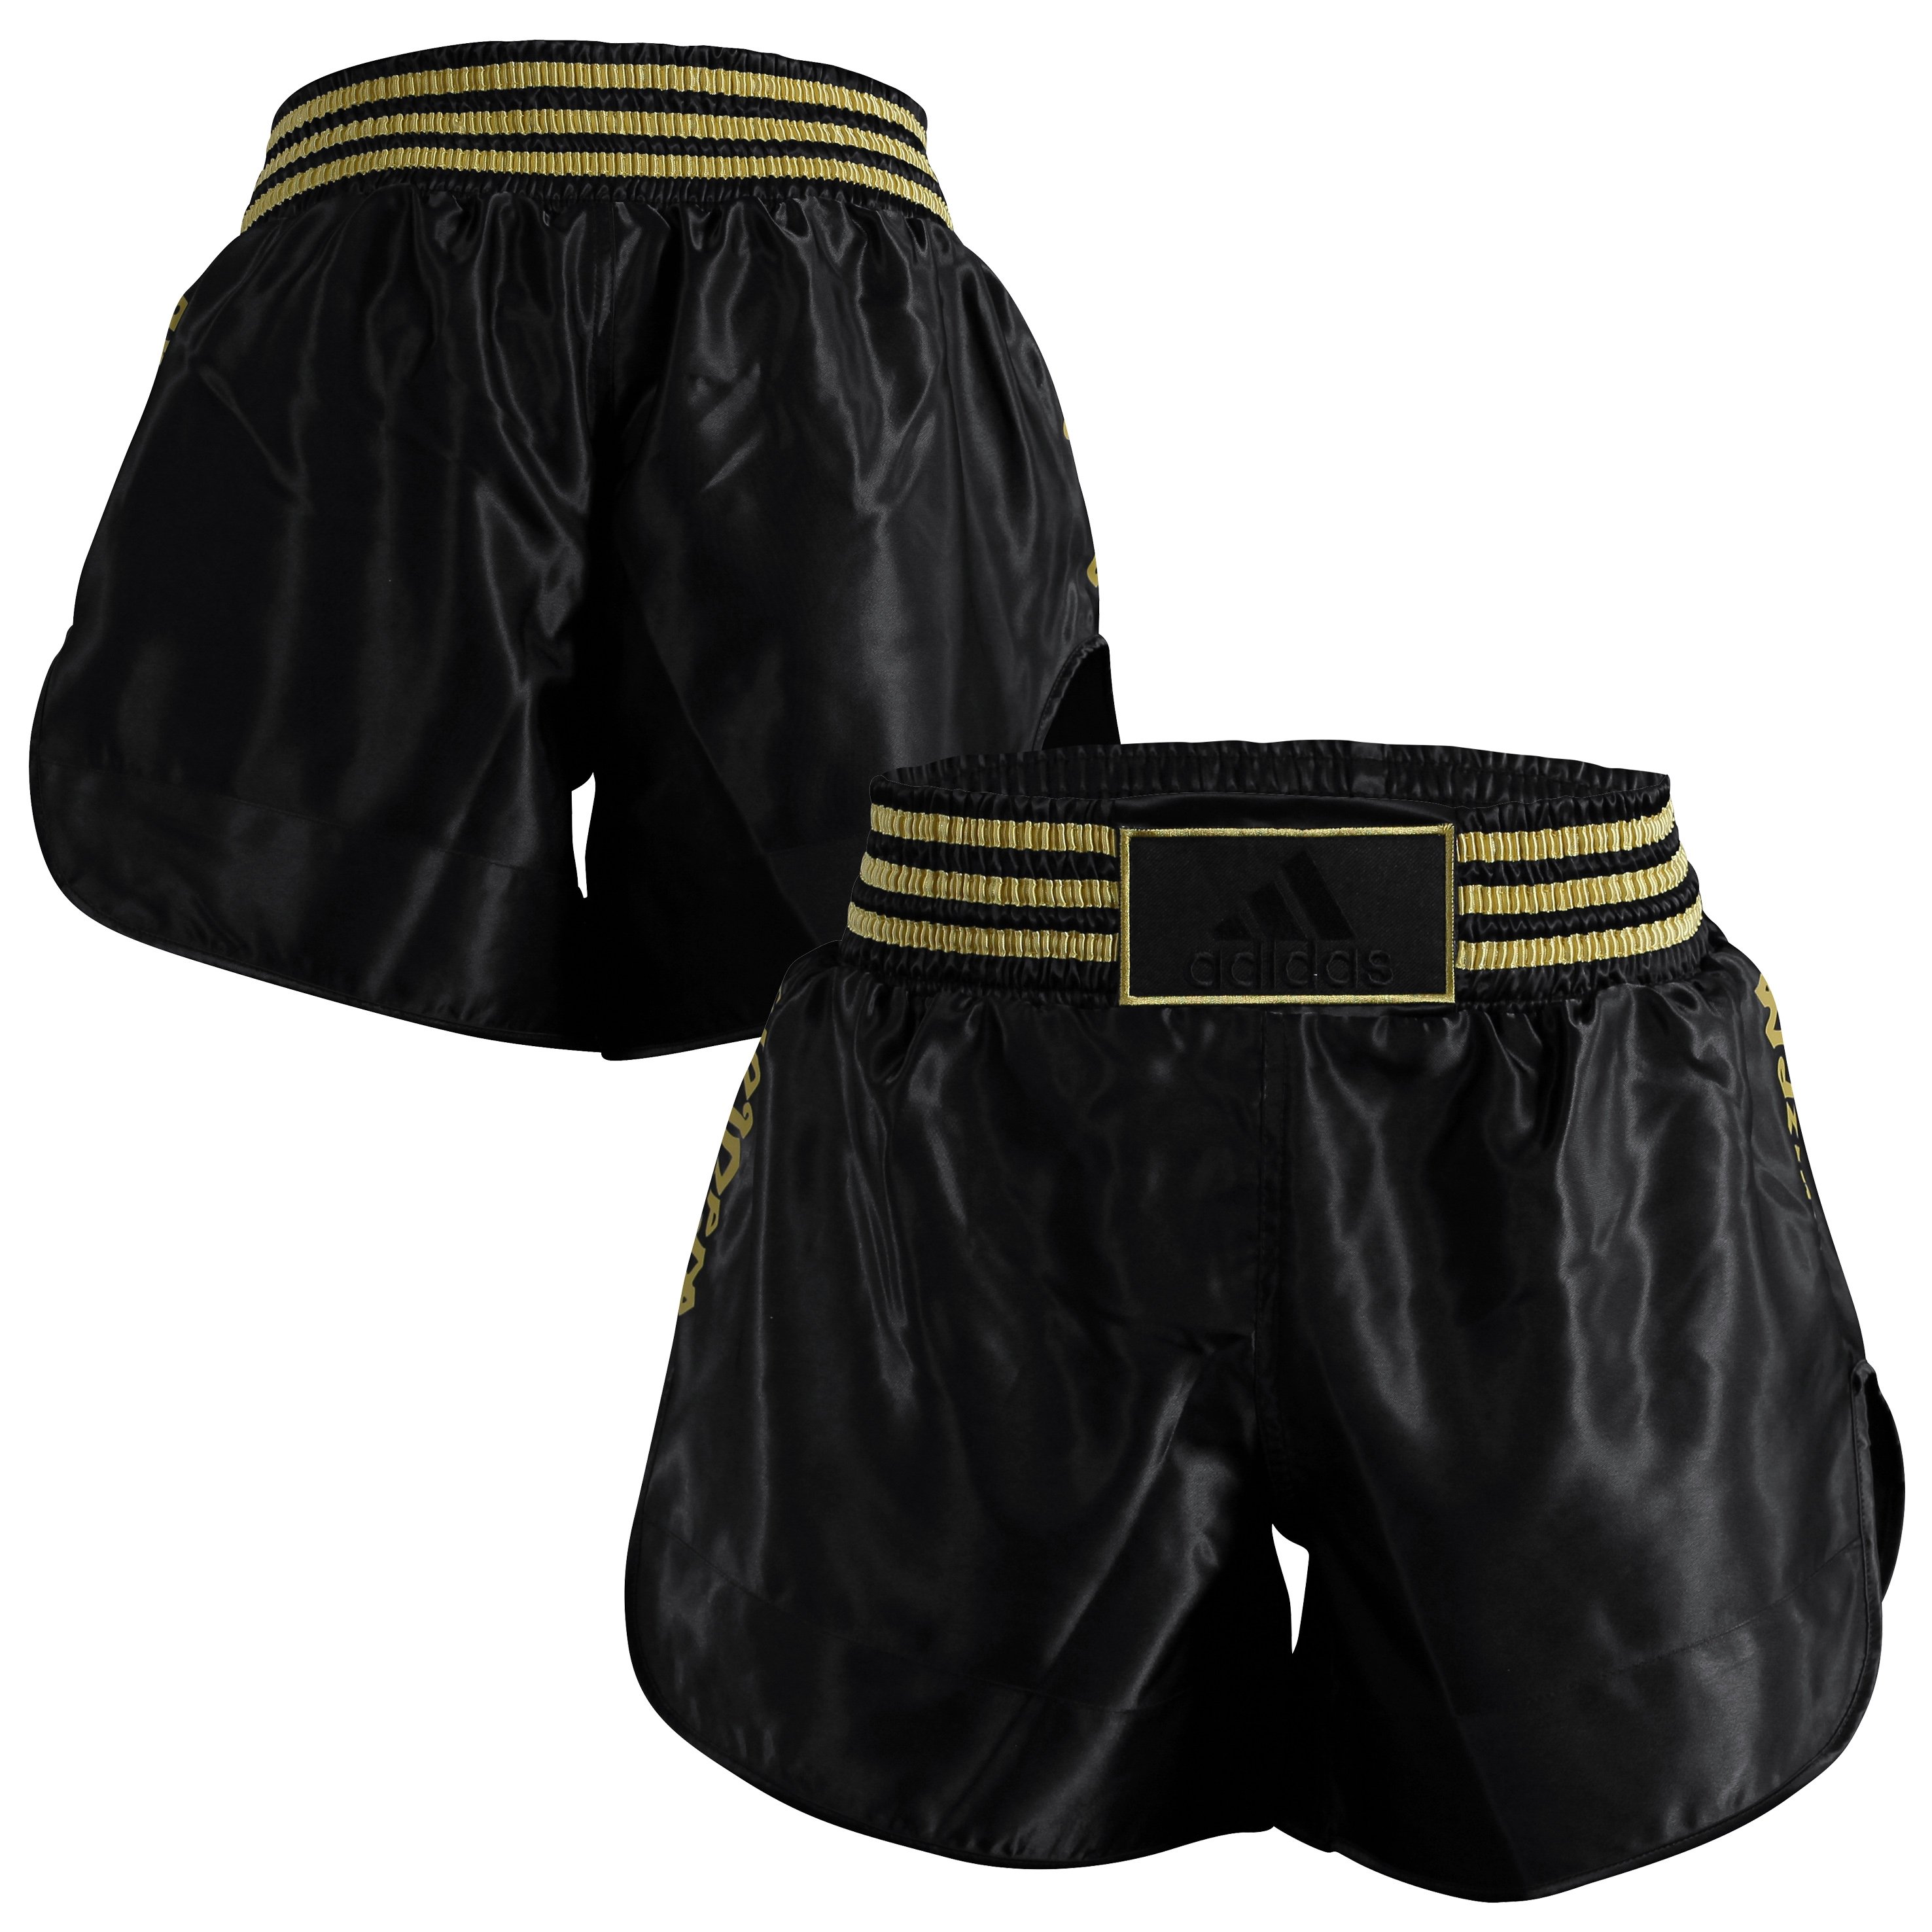 adidas thai boxing shorts